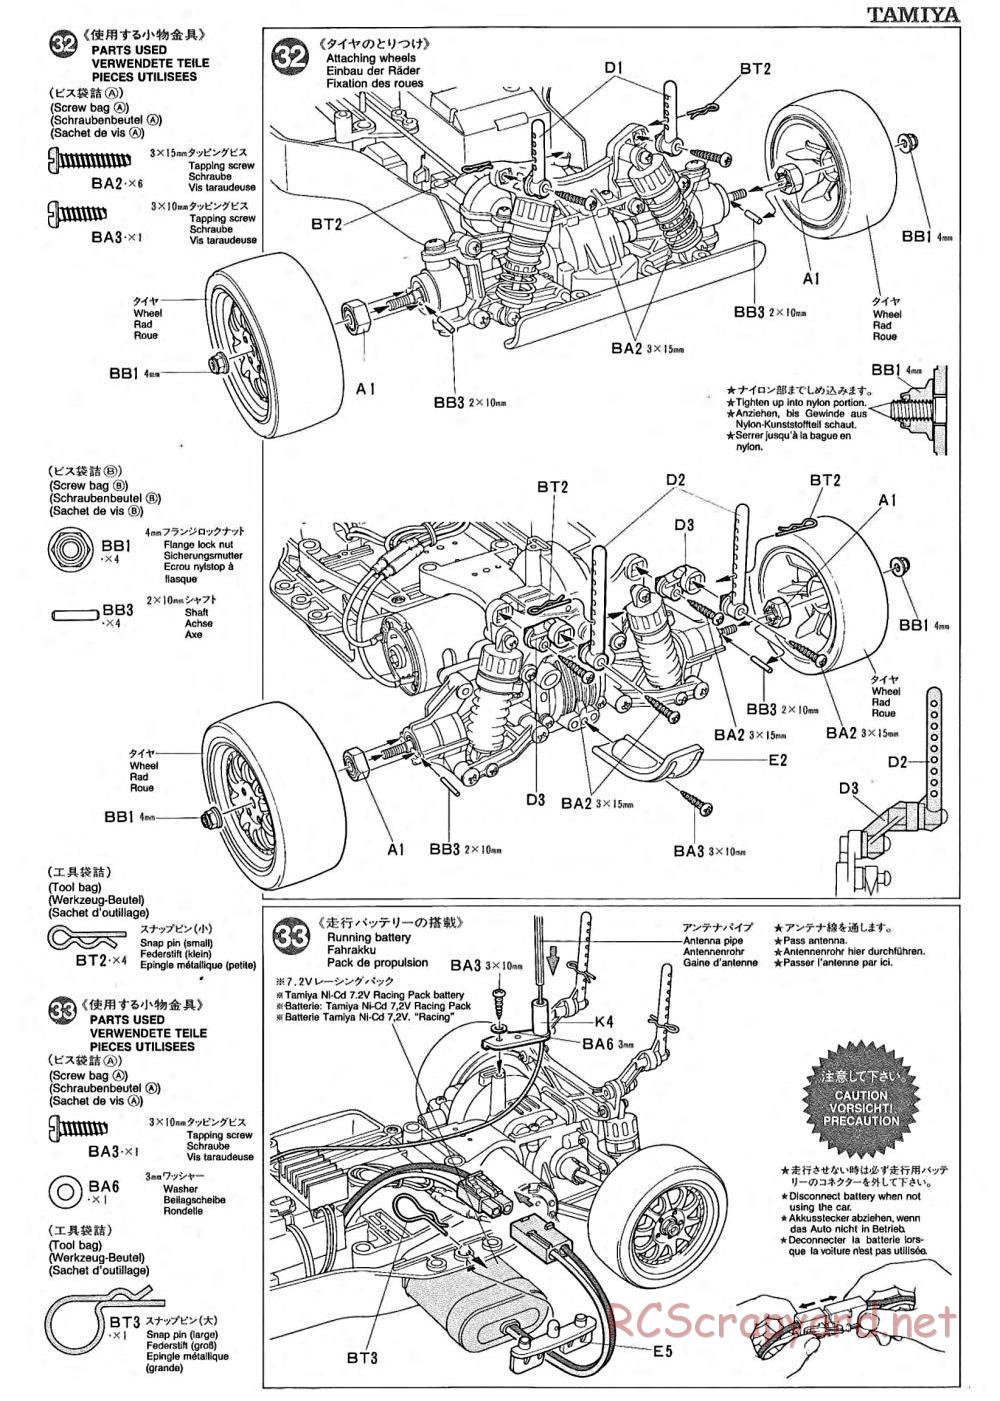 Tamiya - TA-02 Chassis - Manual - Page 12